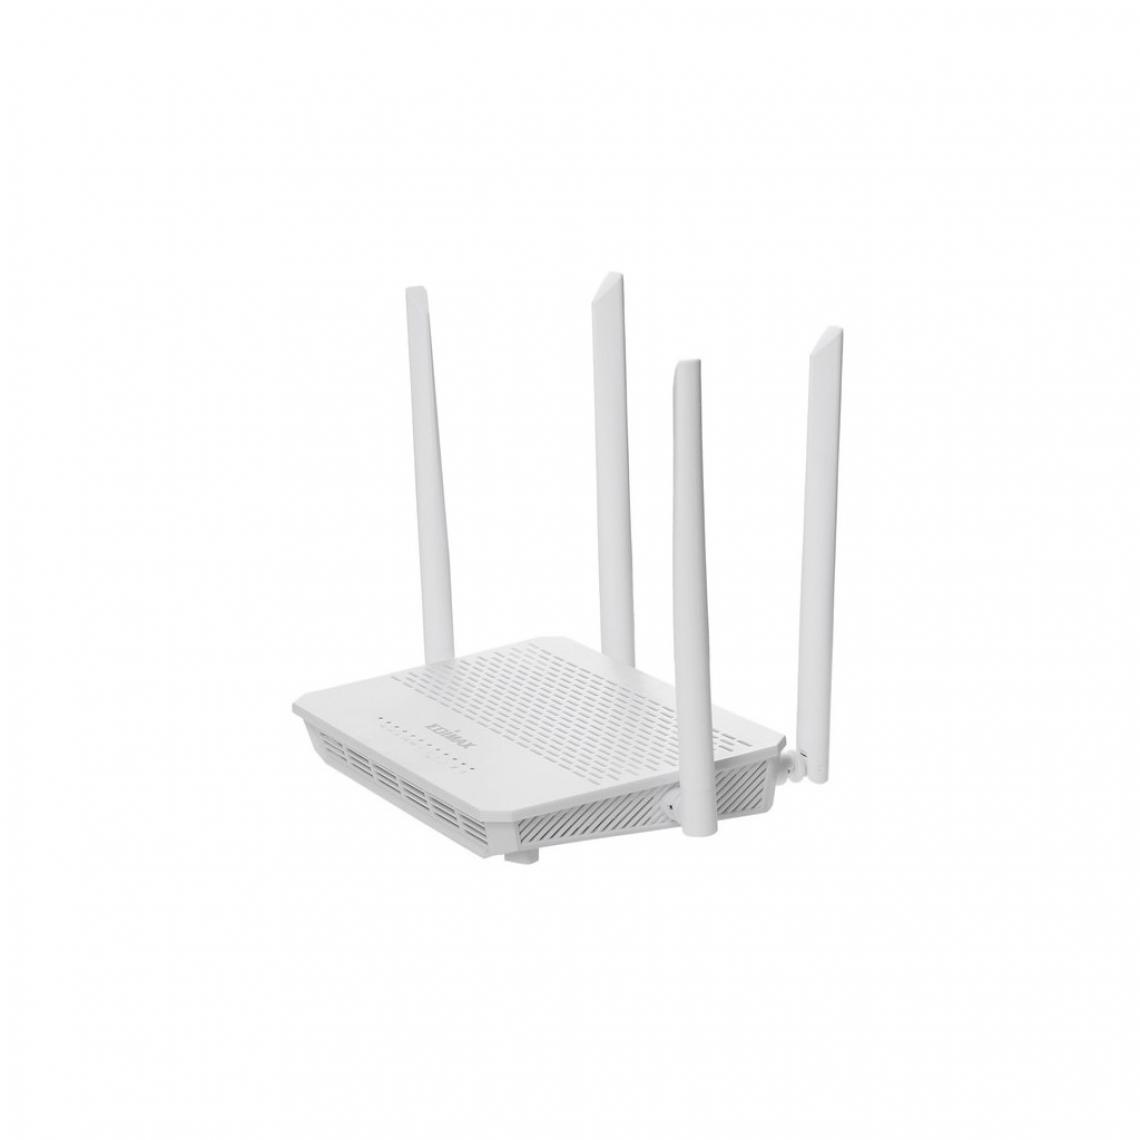 Alpexe - Adaptateur reseau Sans fil Routeur AC1200 2.4/5 GHz (Dual Band) Gigabit Blanc - Modem / Routeur / Points d'accès